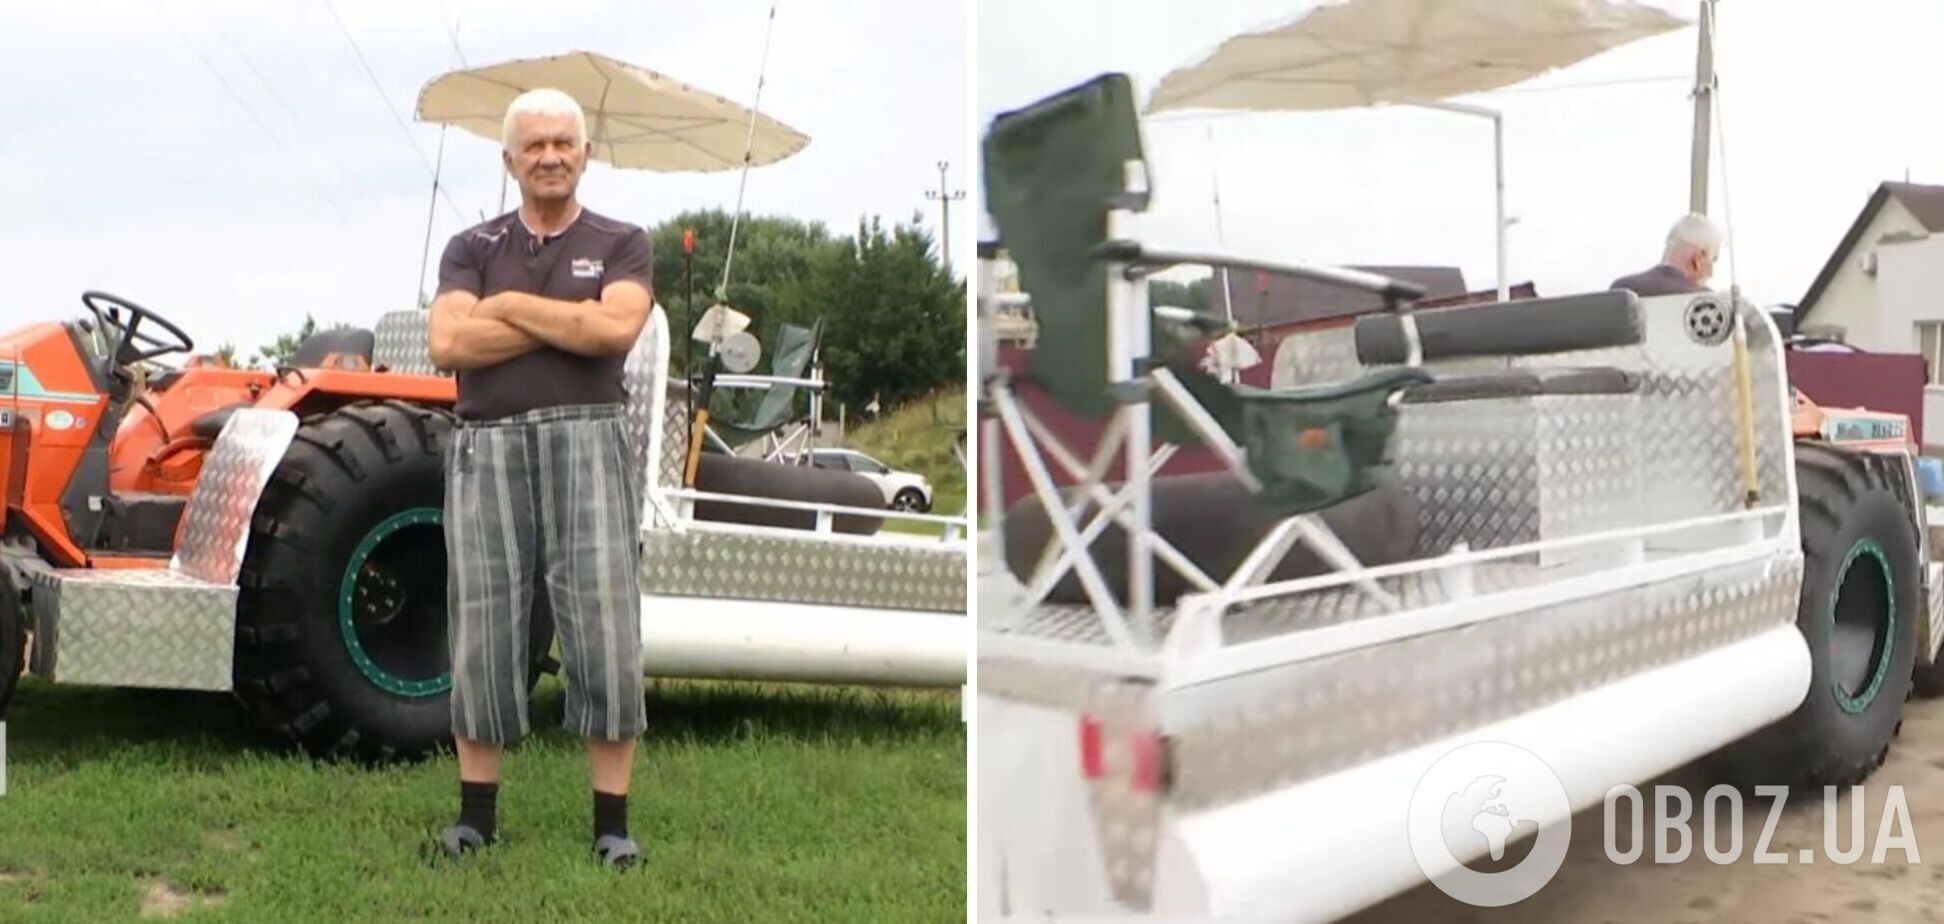 Украинец смастерил первый в мире плавающий трактор. Видео